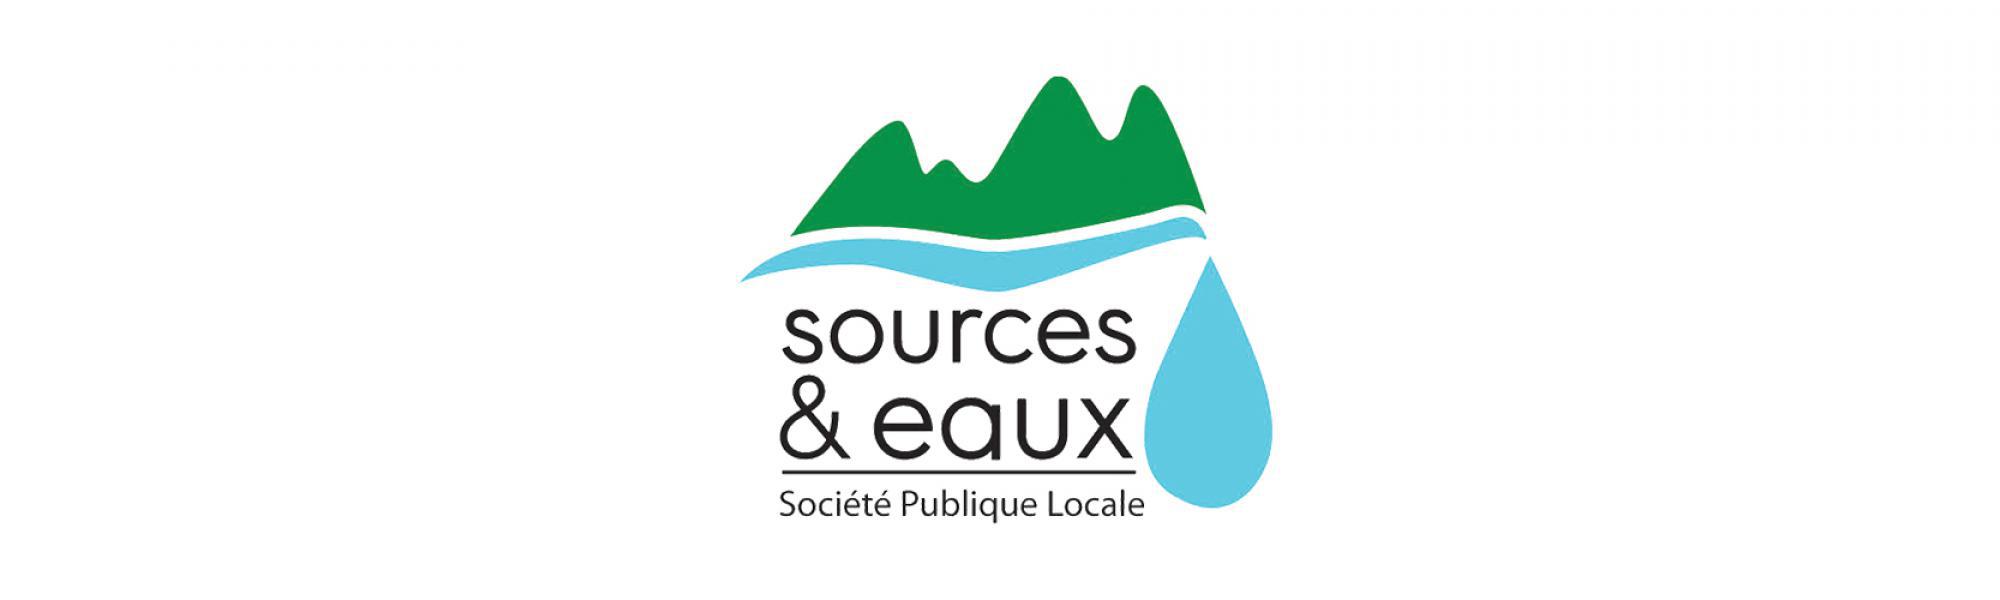 logo SPL Sources et Eaux